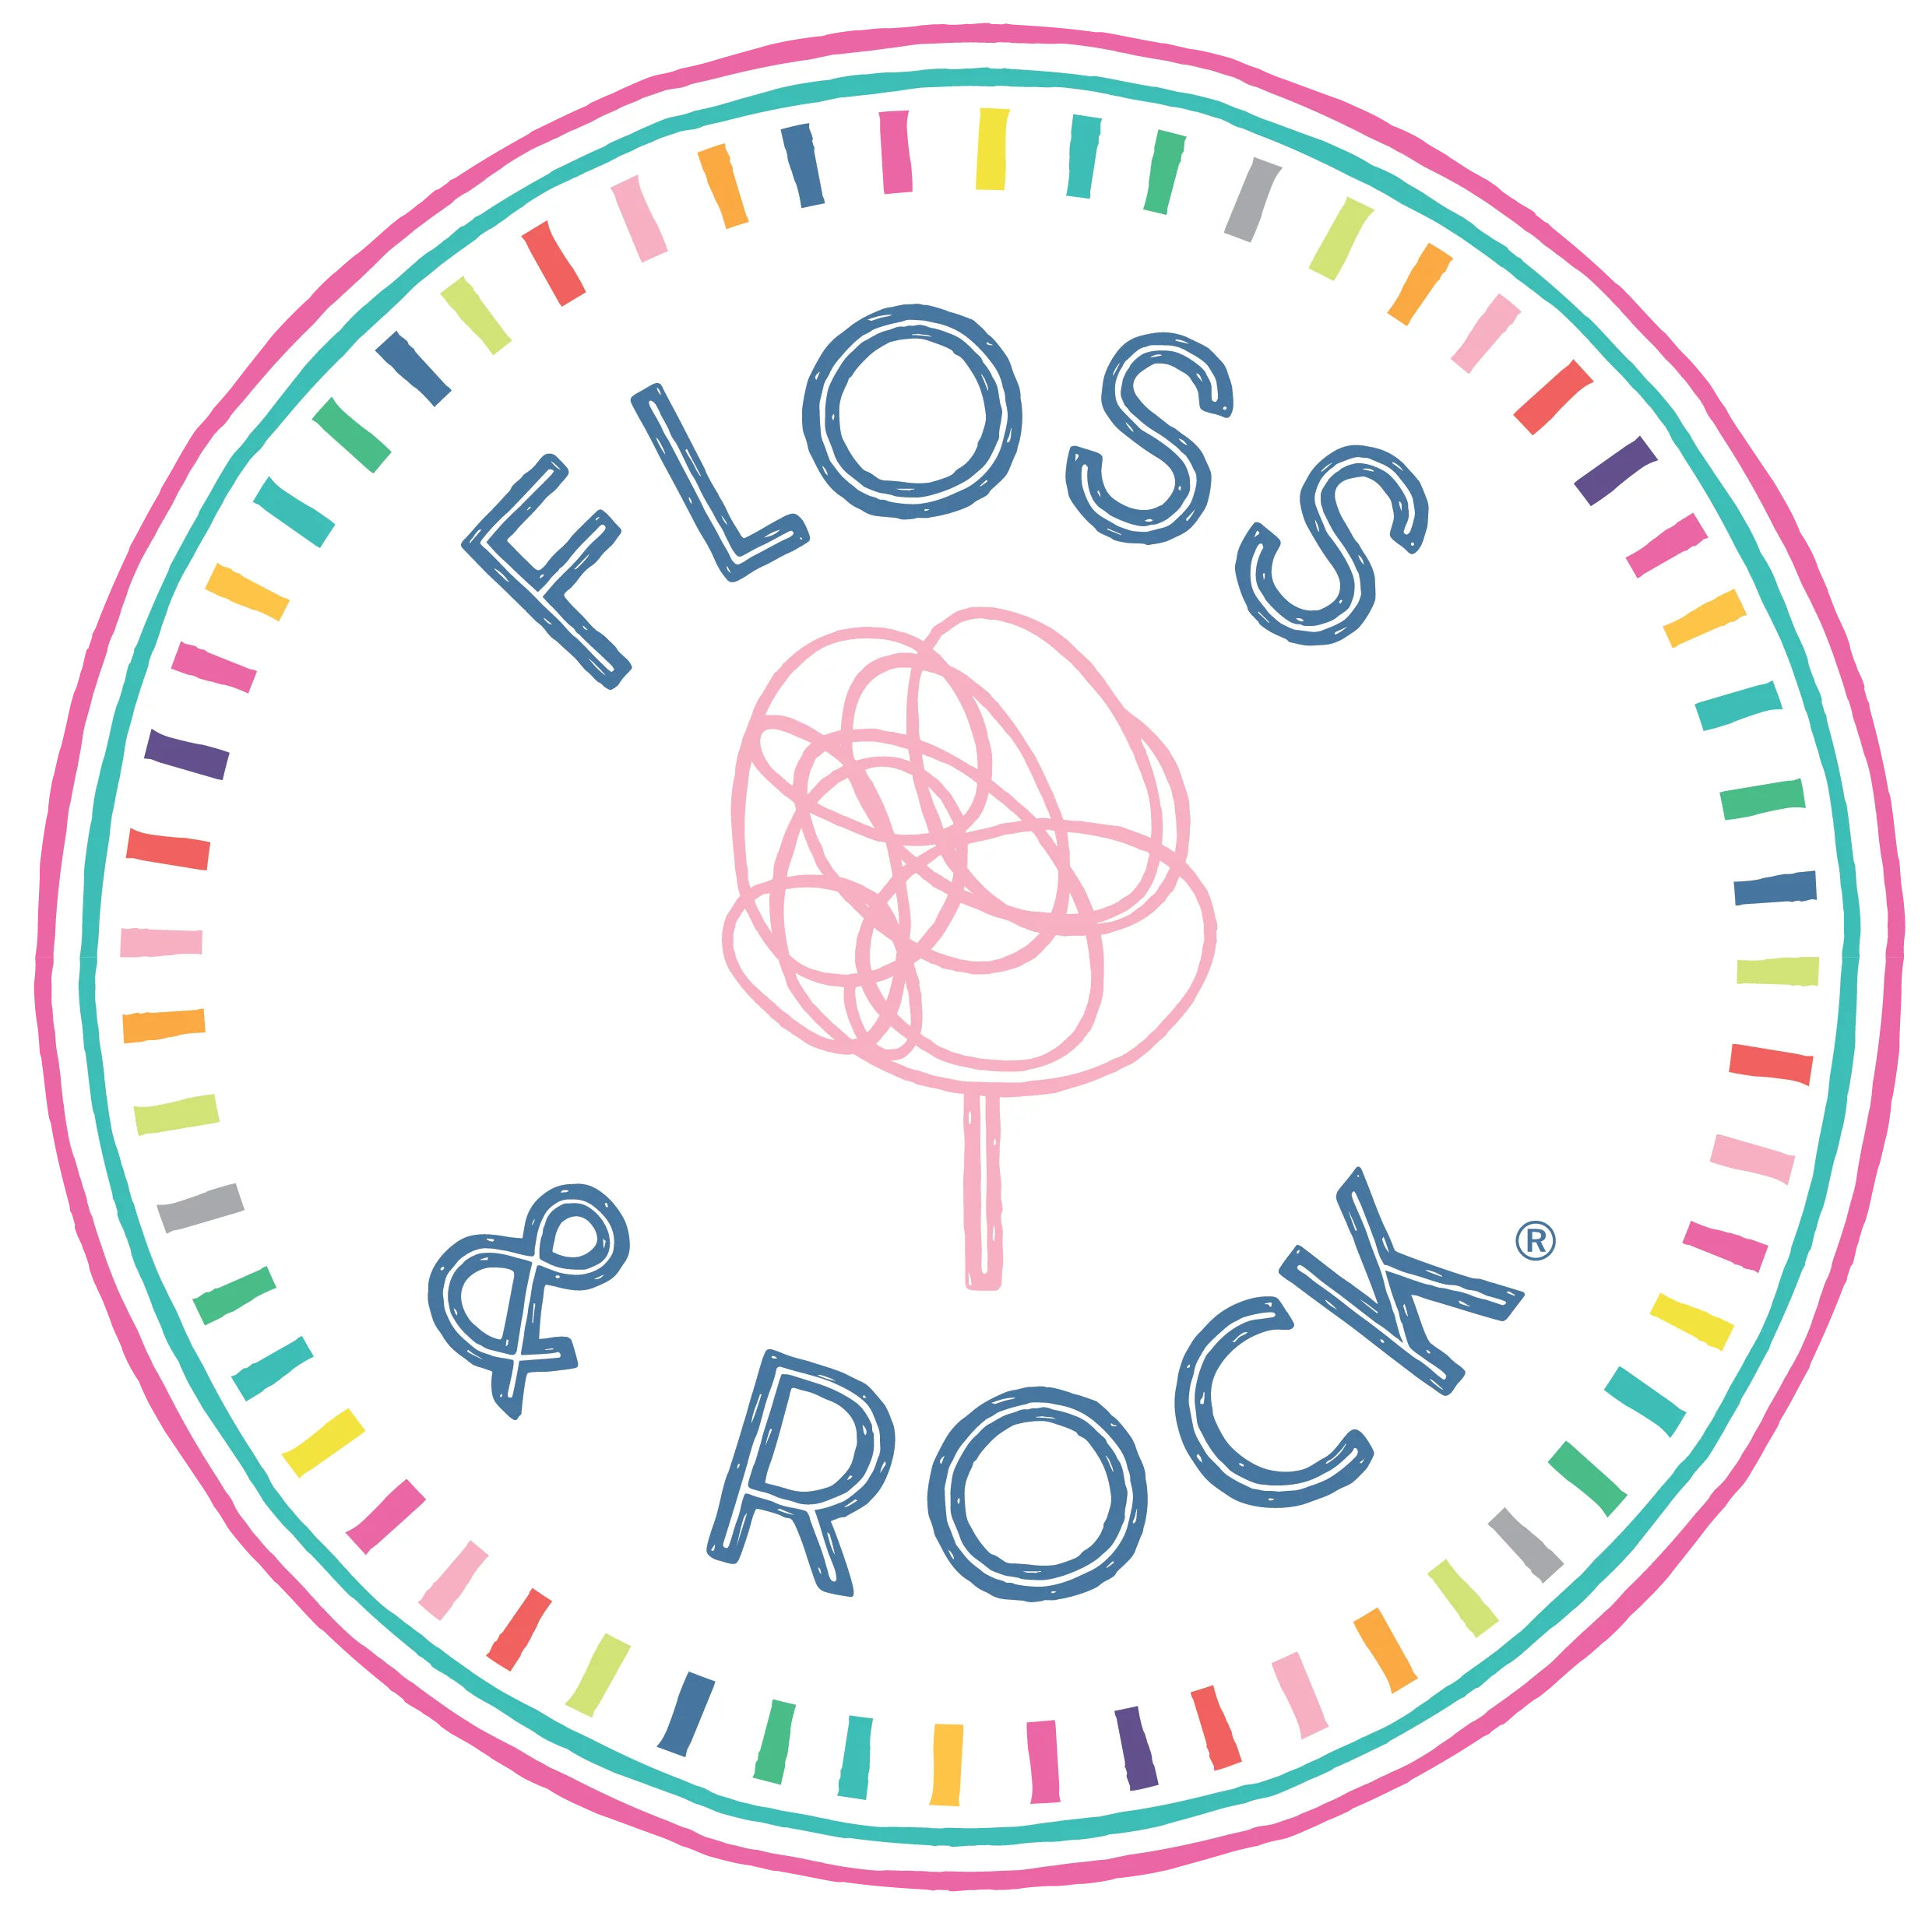 FLOSS & ROCK